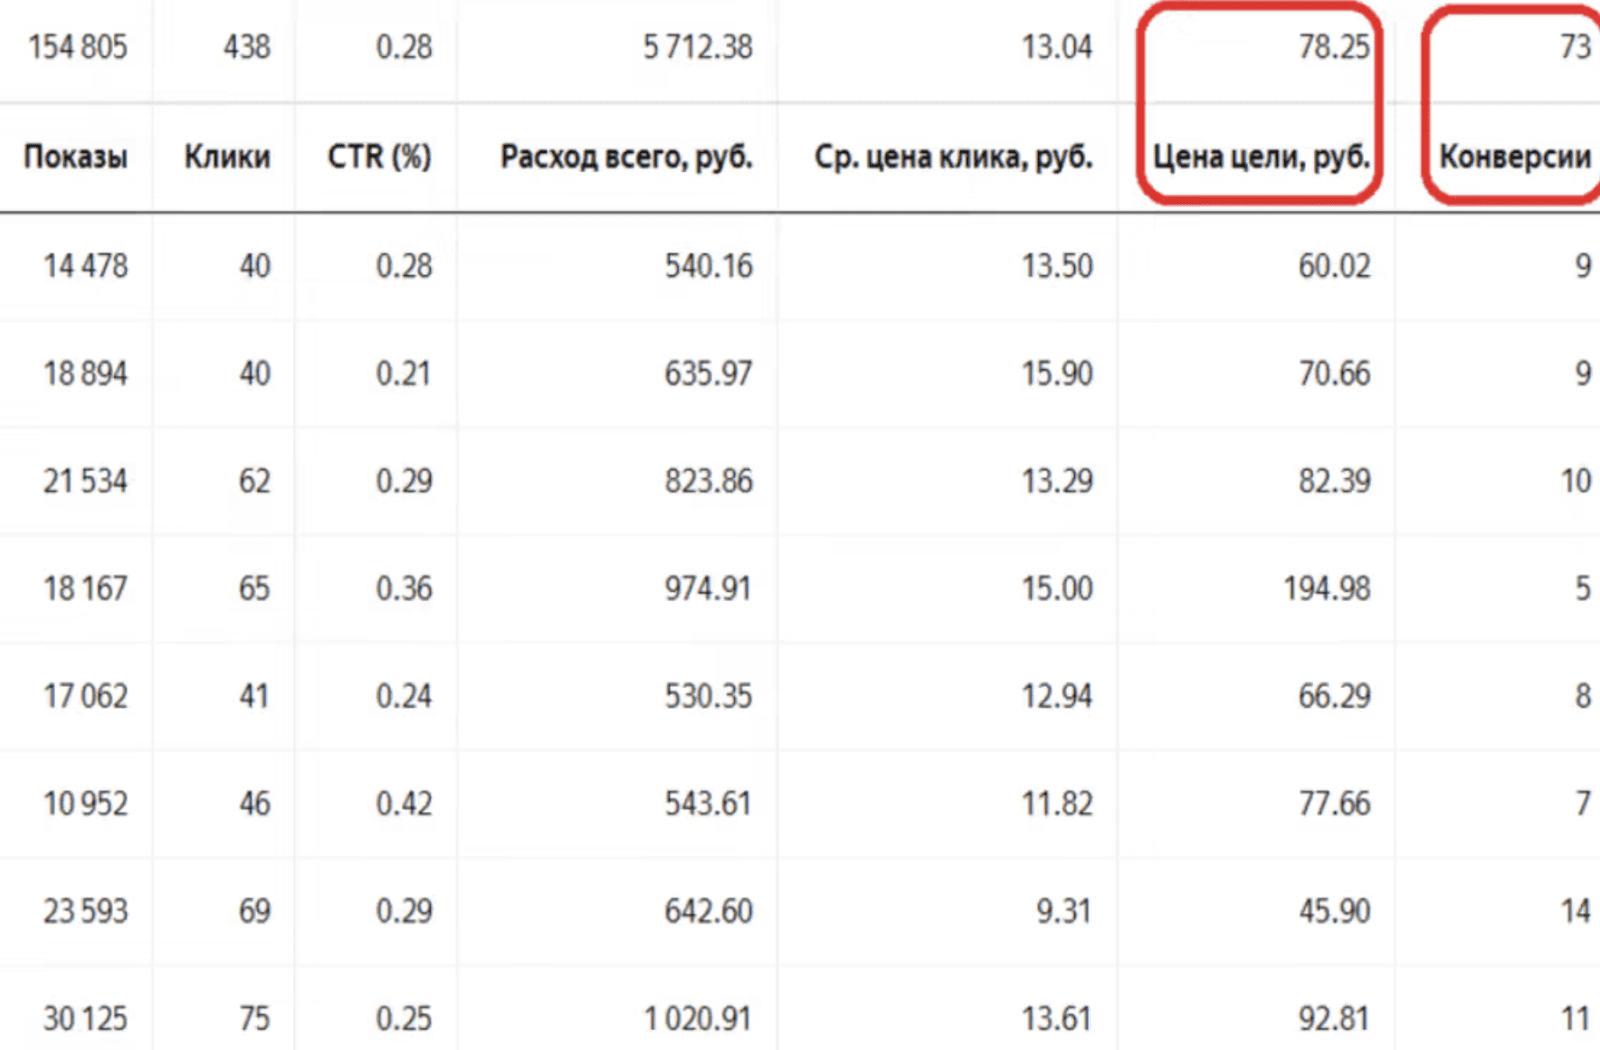 РСЯ CPMV. Средняя цена конверсий в Яндексе. Price conversion